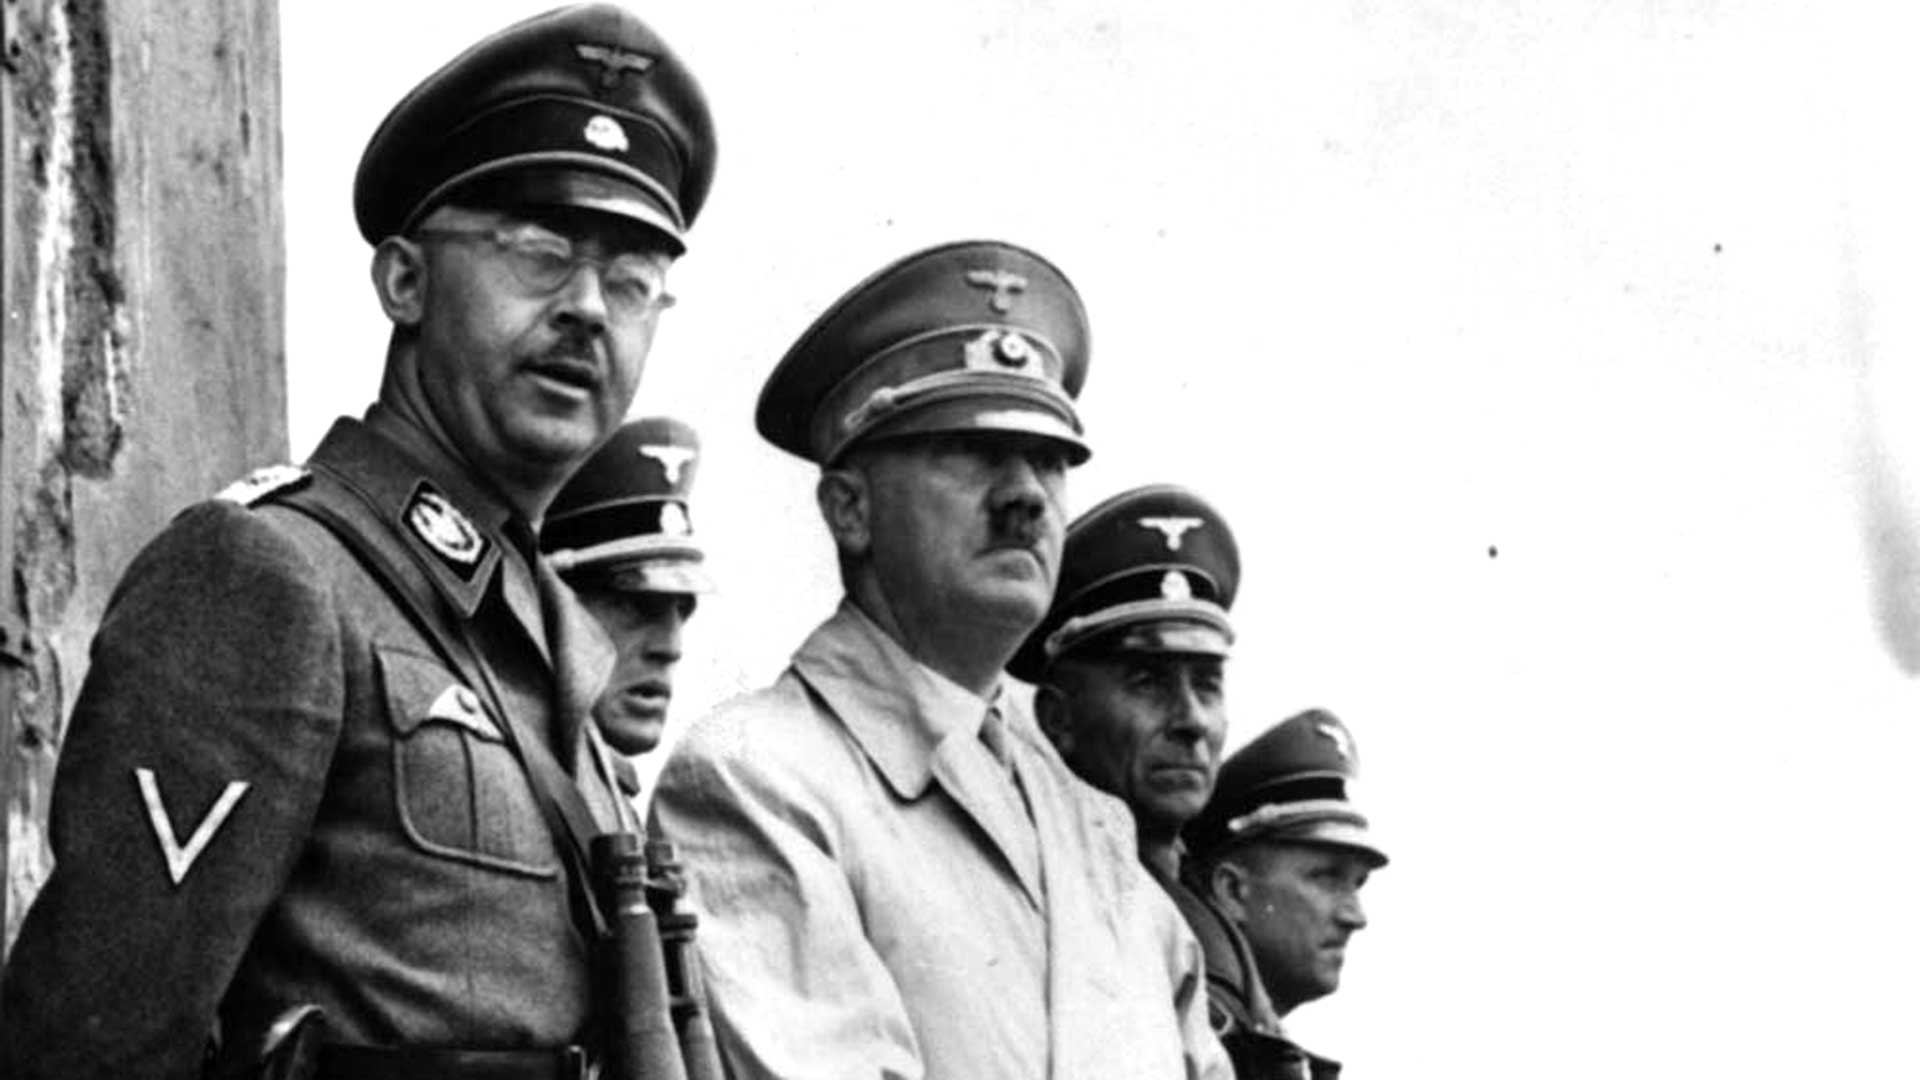 Himmler junto a Hitler. Además de ser el arquitecto de la Shoa, creó los Escuadrones de la Muerte nazis. Un ser despreciable